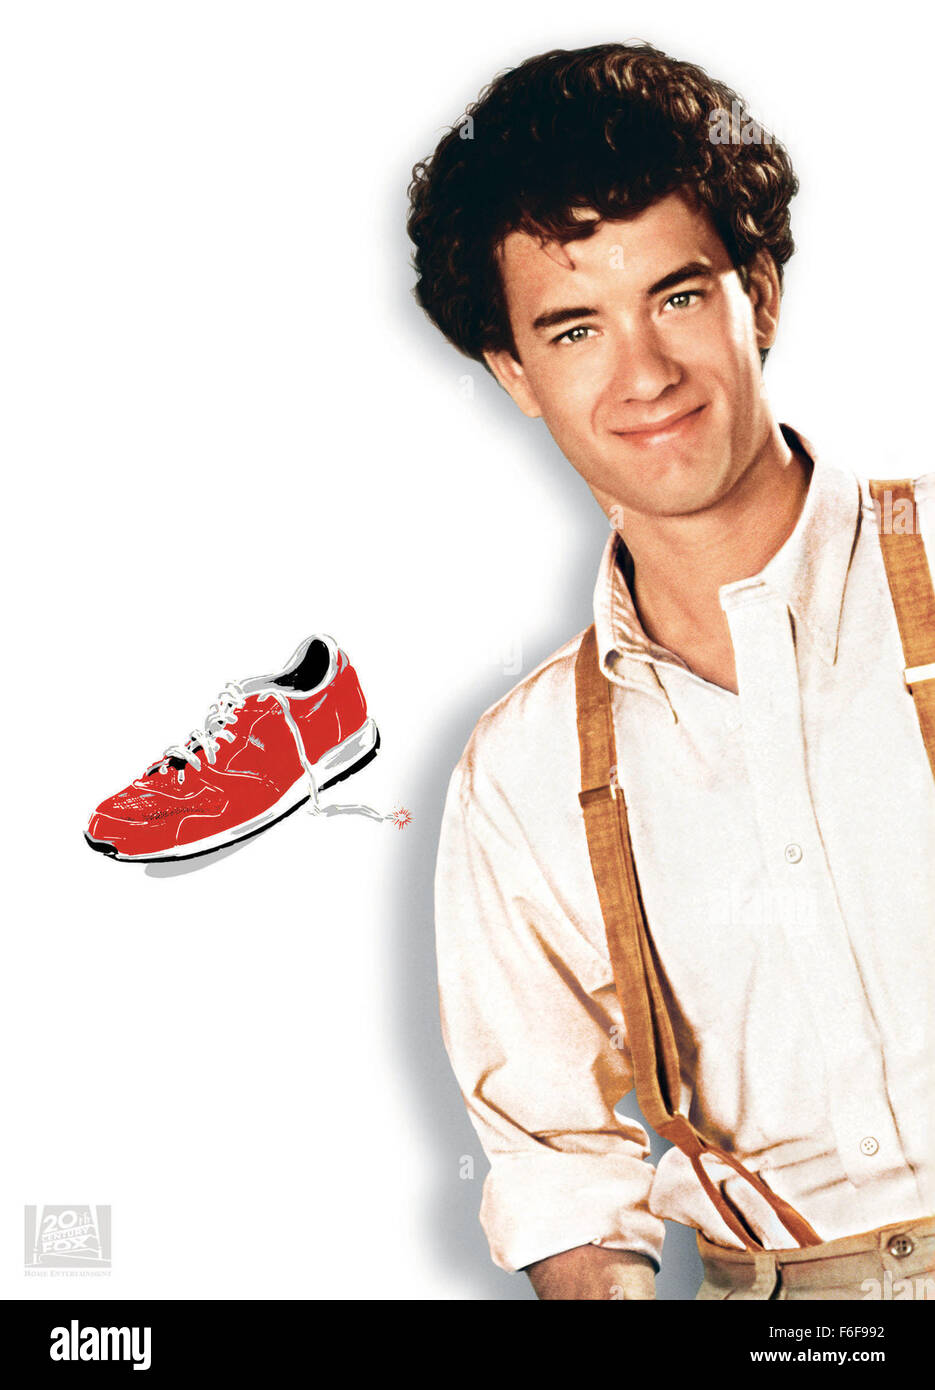 DATE DE SORTIE : 19 juillet 1985 TITRE DU FILM : l'homme avec une chaussure  rouge Réalisateur : Stan Dragoti STUDIO : 20th Century Fox PLOT : un homme  pris de façon